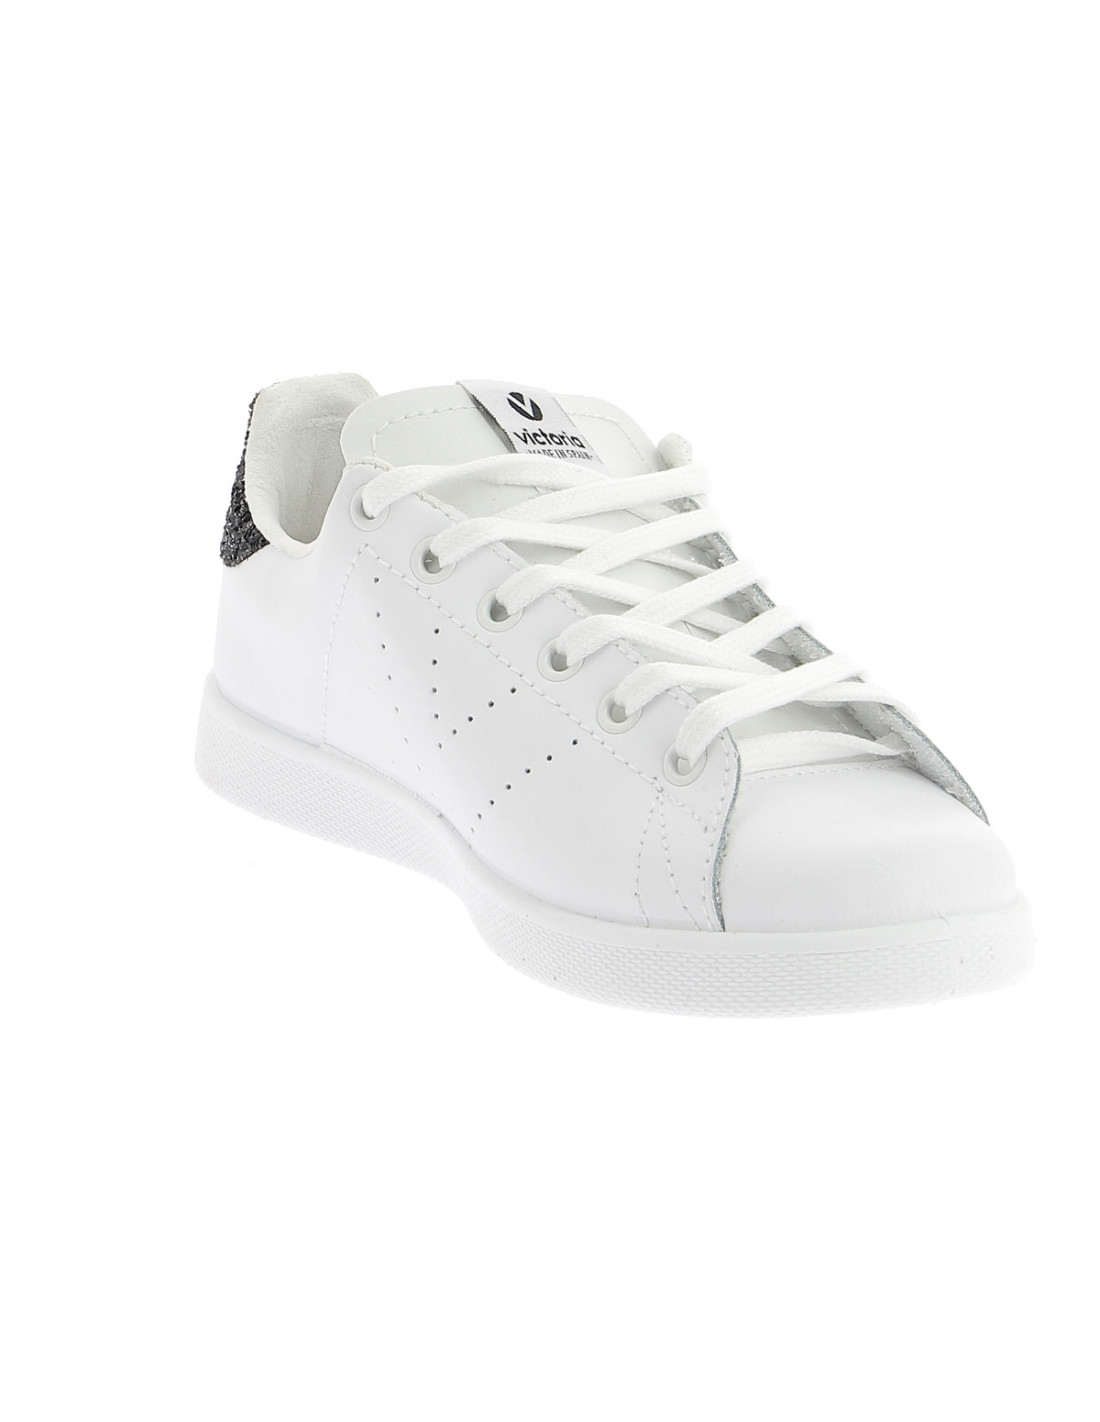 Chaussures Victoria blanc fille - 125129 Cuir BLANC - CM0518